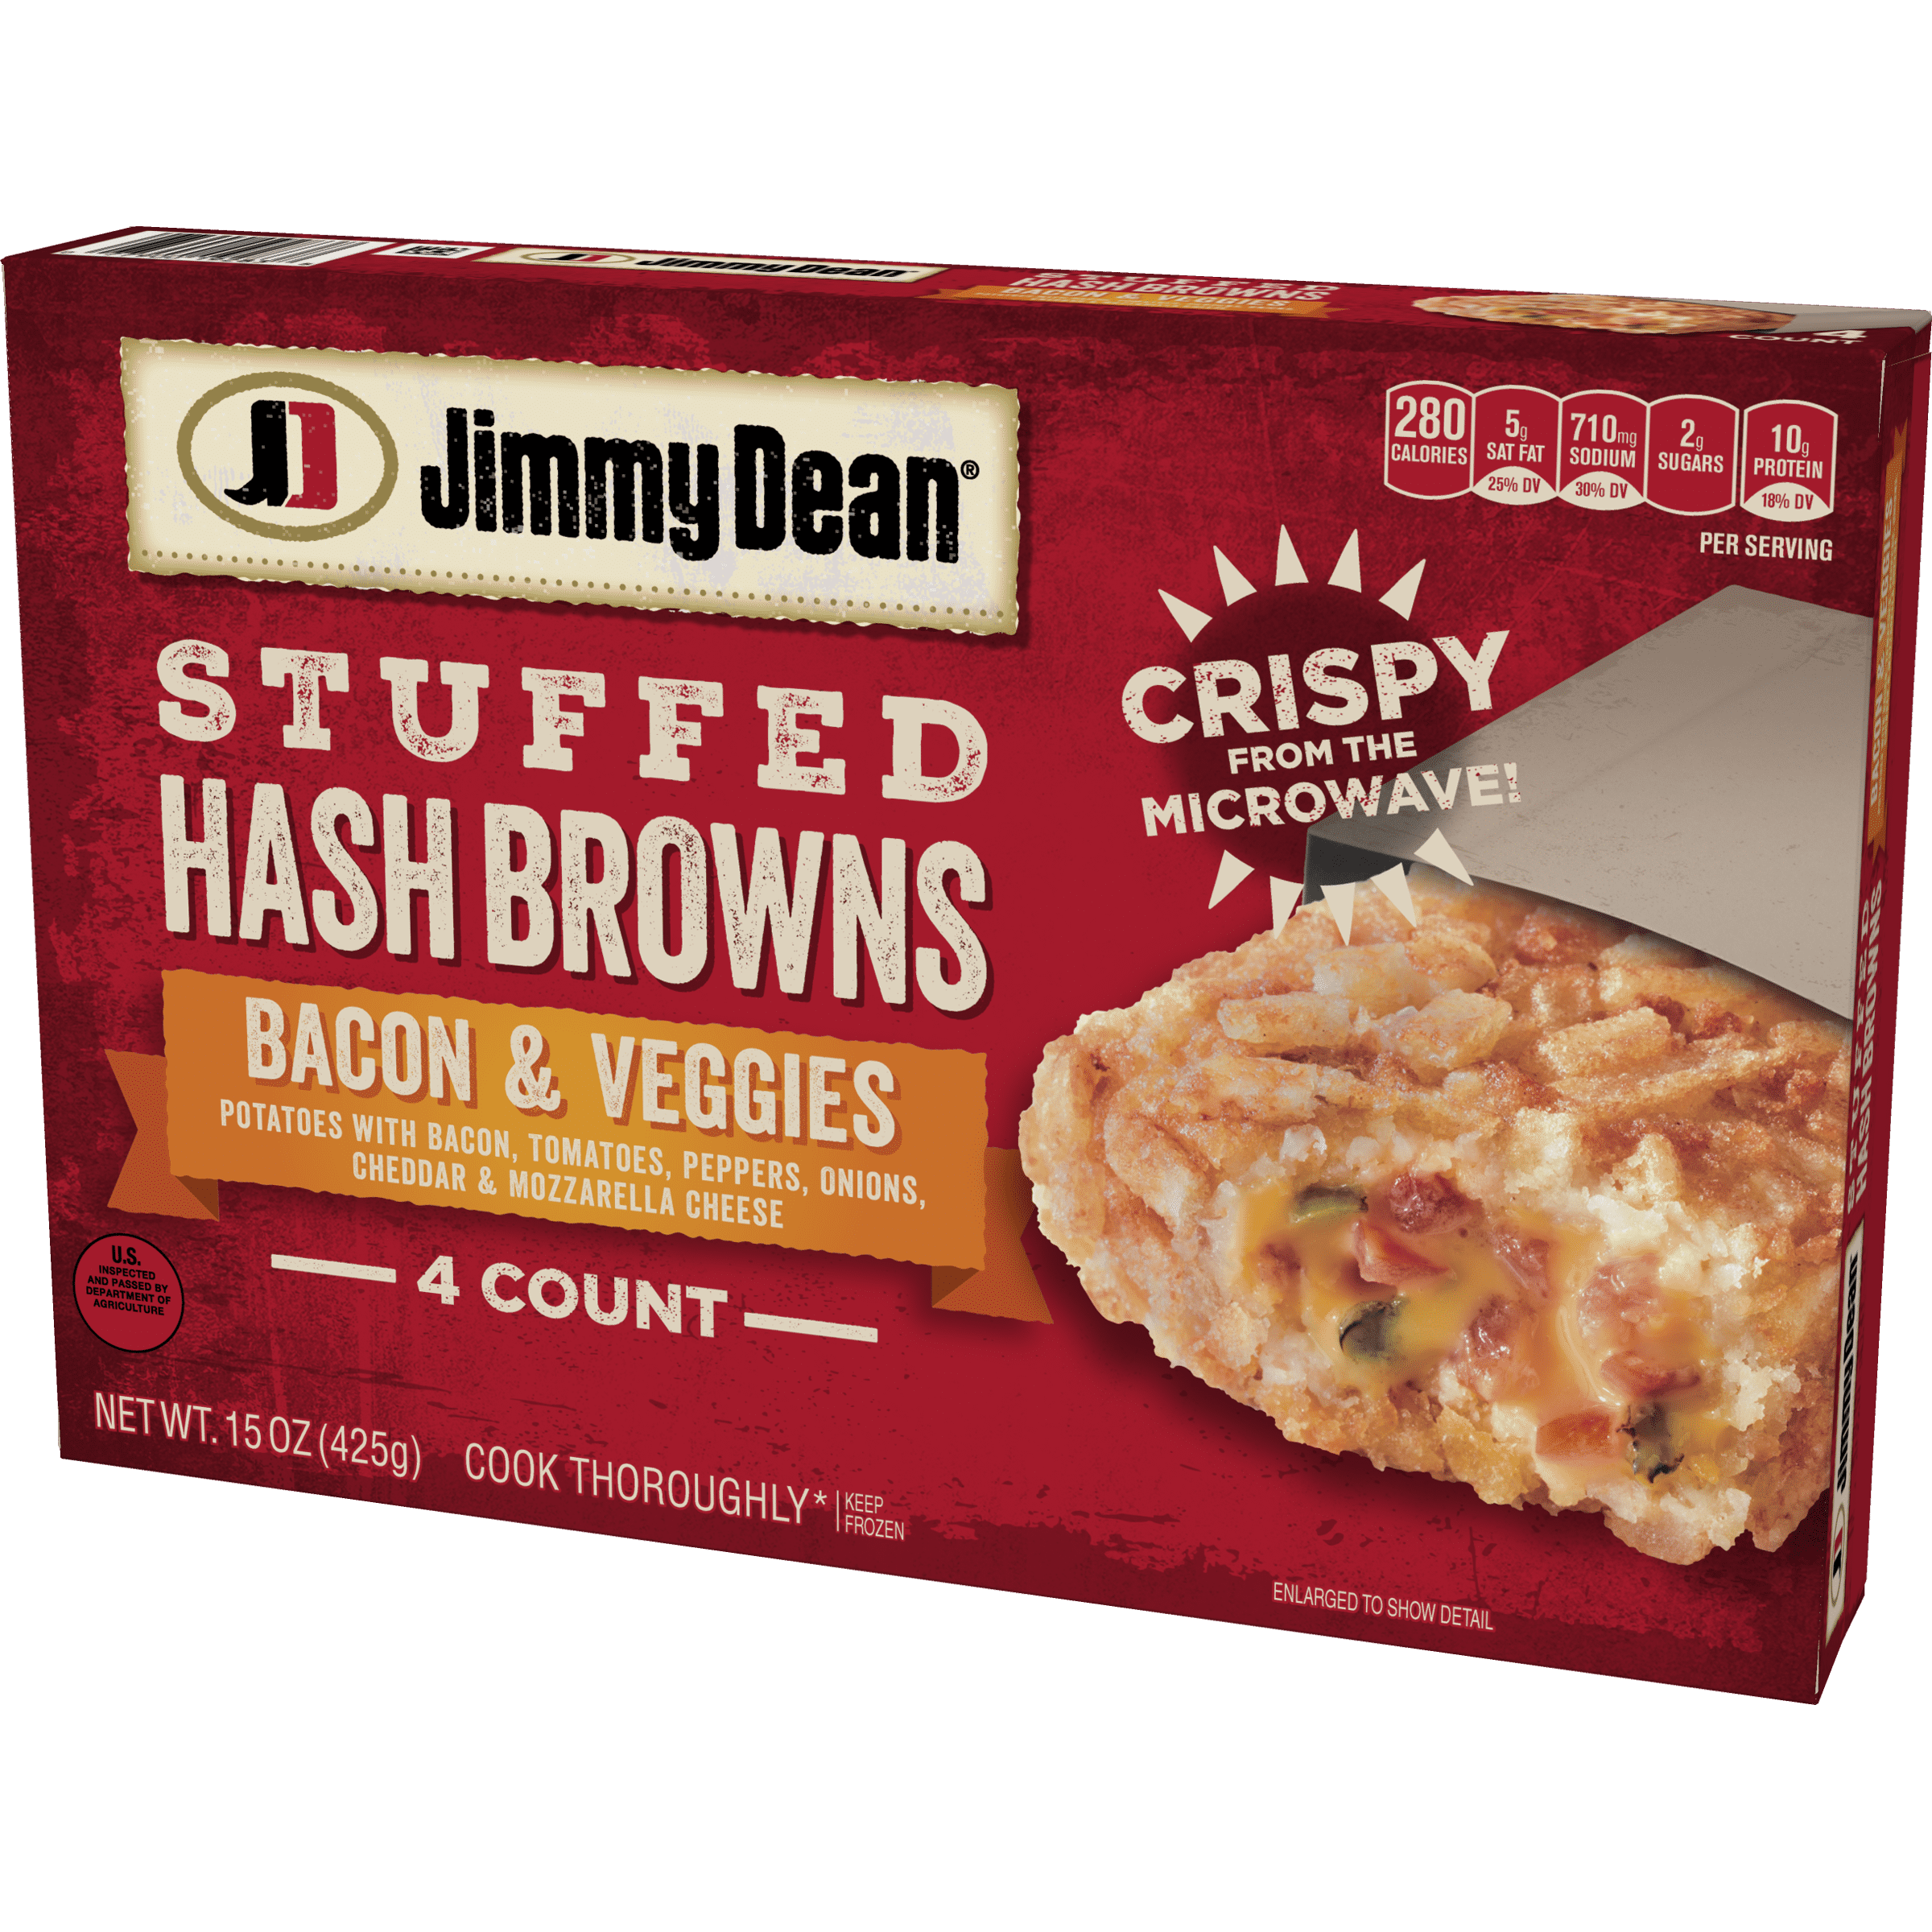 BA's Best Hash Browns Recipe